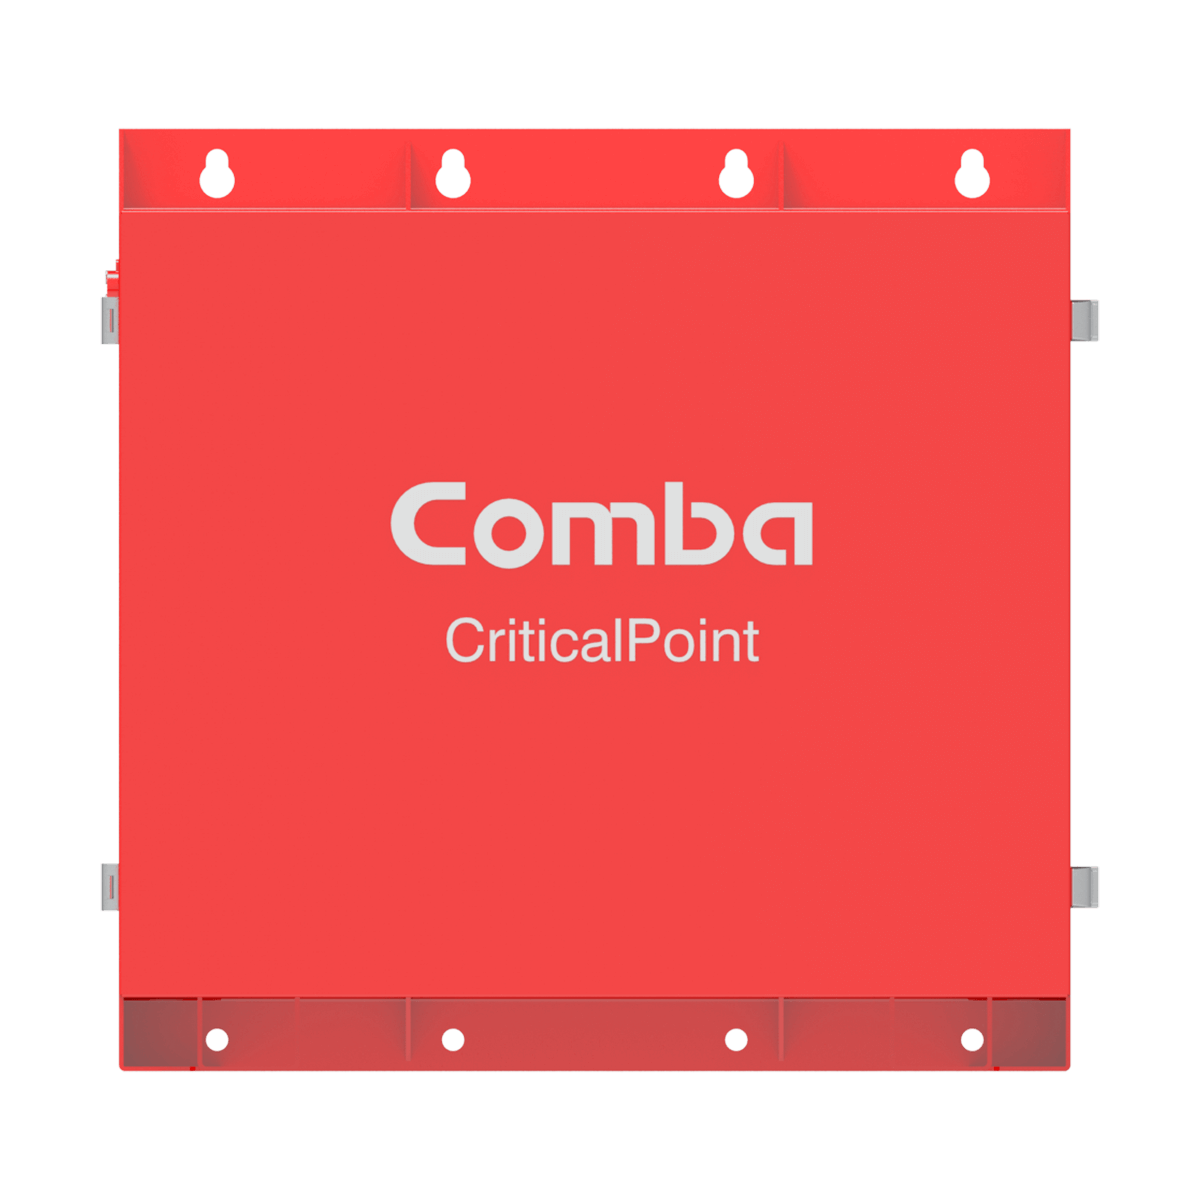 Original Image: Comba – 100-240VAC Input / -48VDC Output, 60AH LFP battery, UL 2524 Standard Certified, HCAI OSP listed